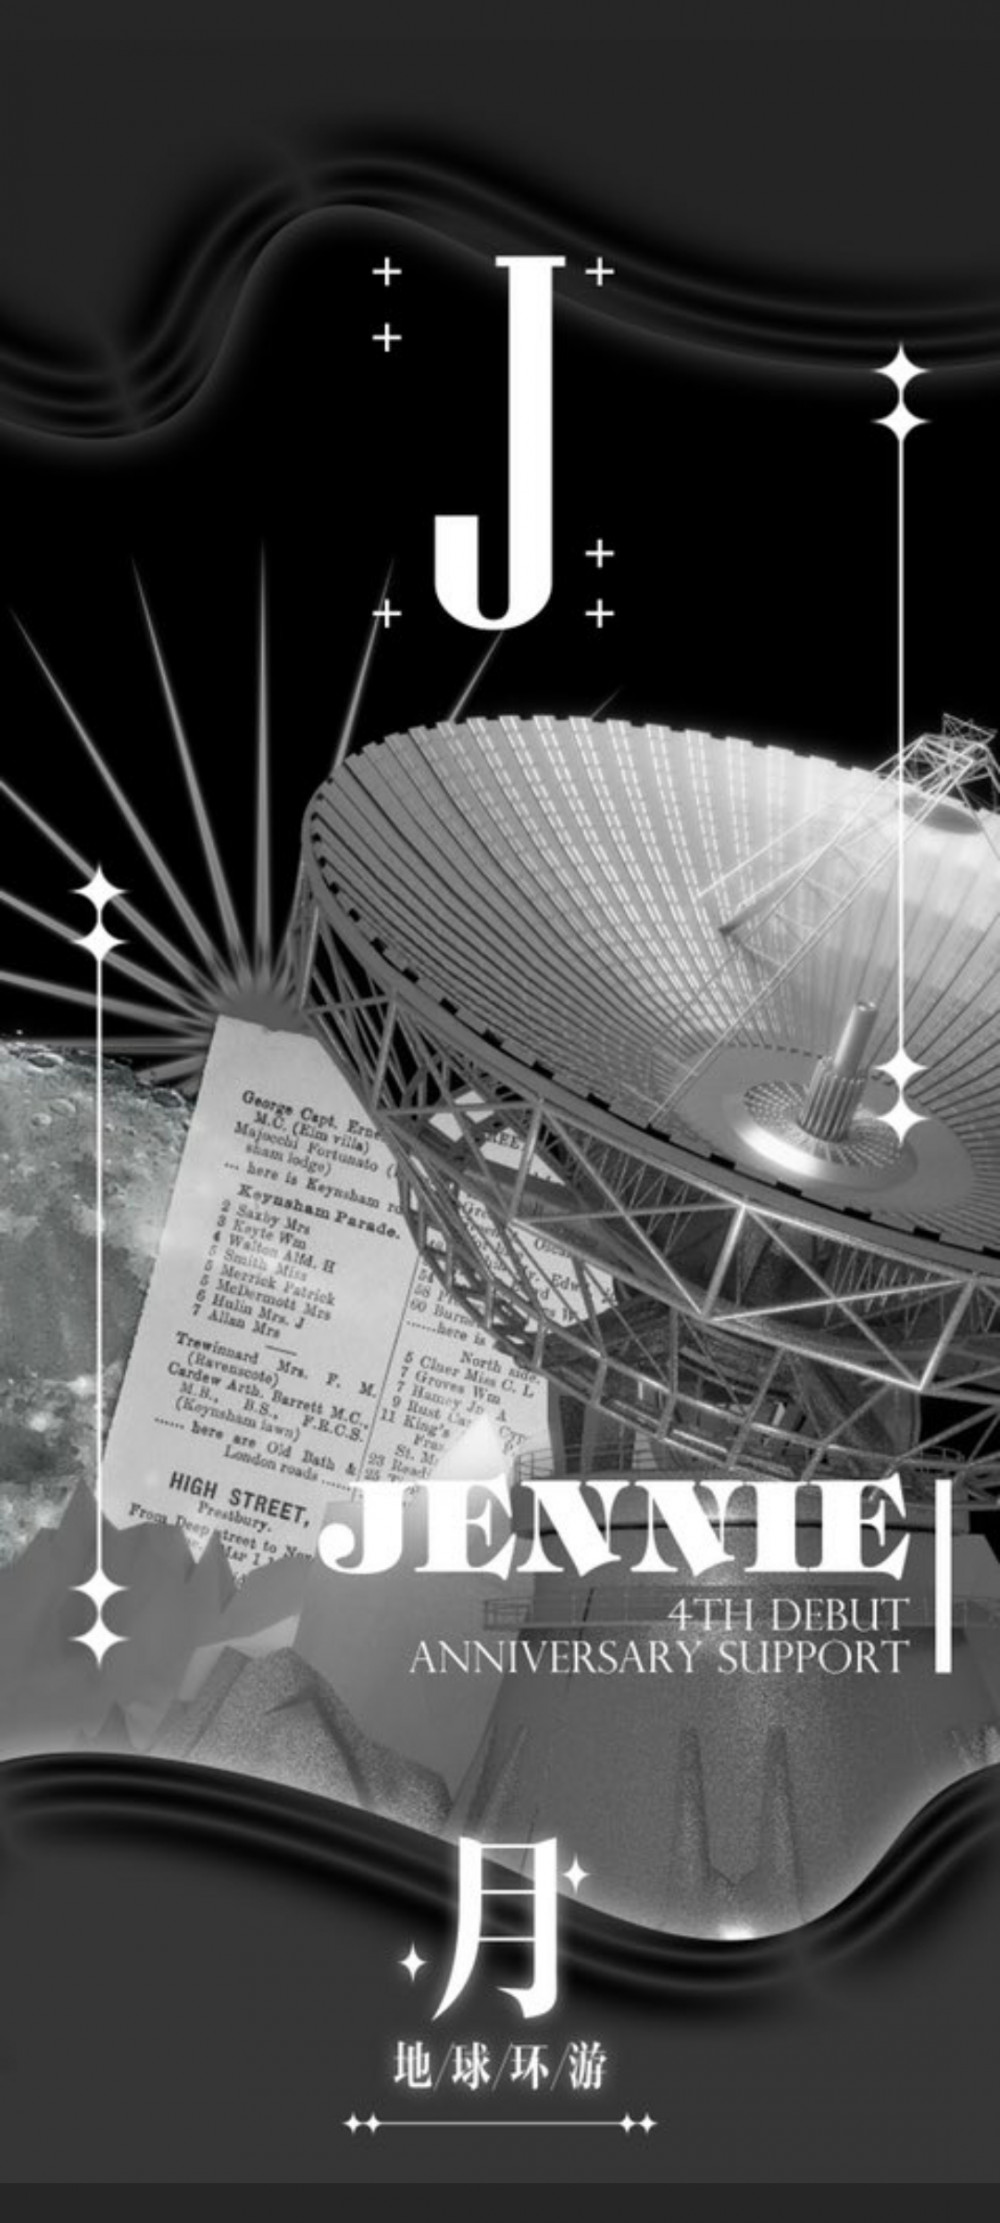 Лицо Дженни из BLACKPINK появится на космическом спутнике